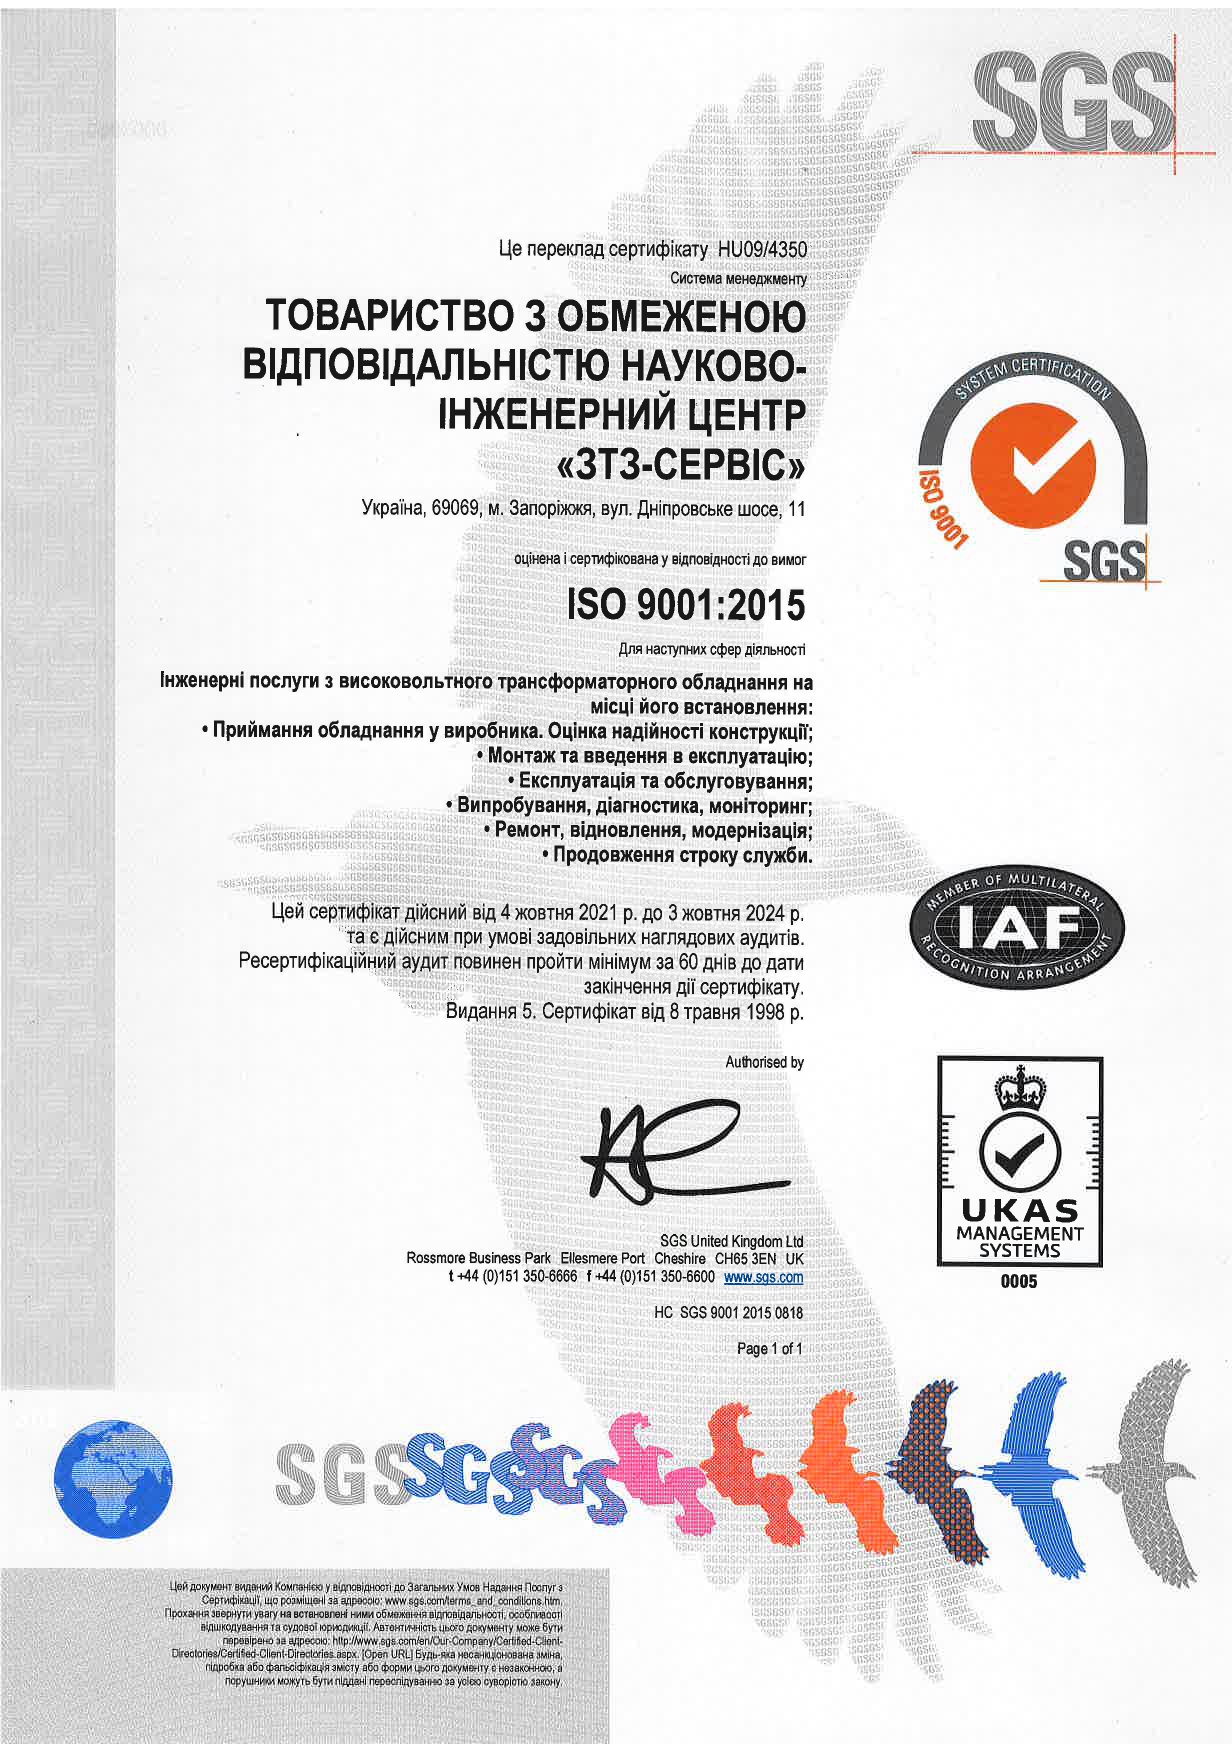 Ре-сертифікаційний аудит за Міжнародним стандартом ISO 9001:2015 пройдено успішно